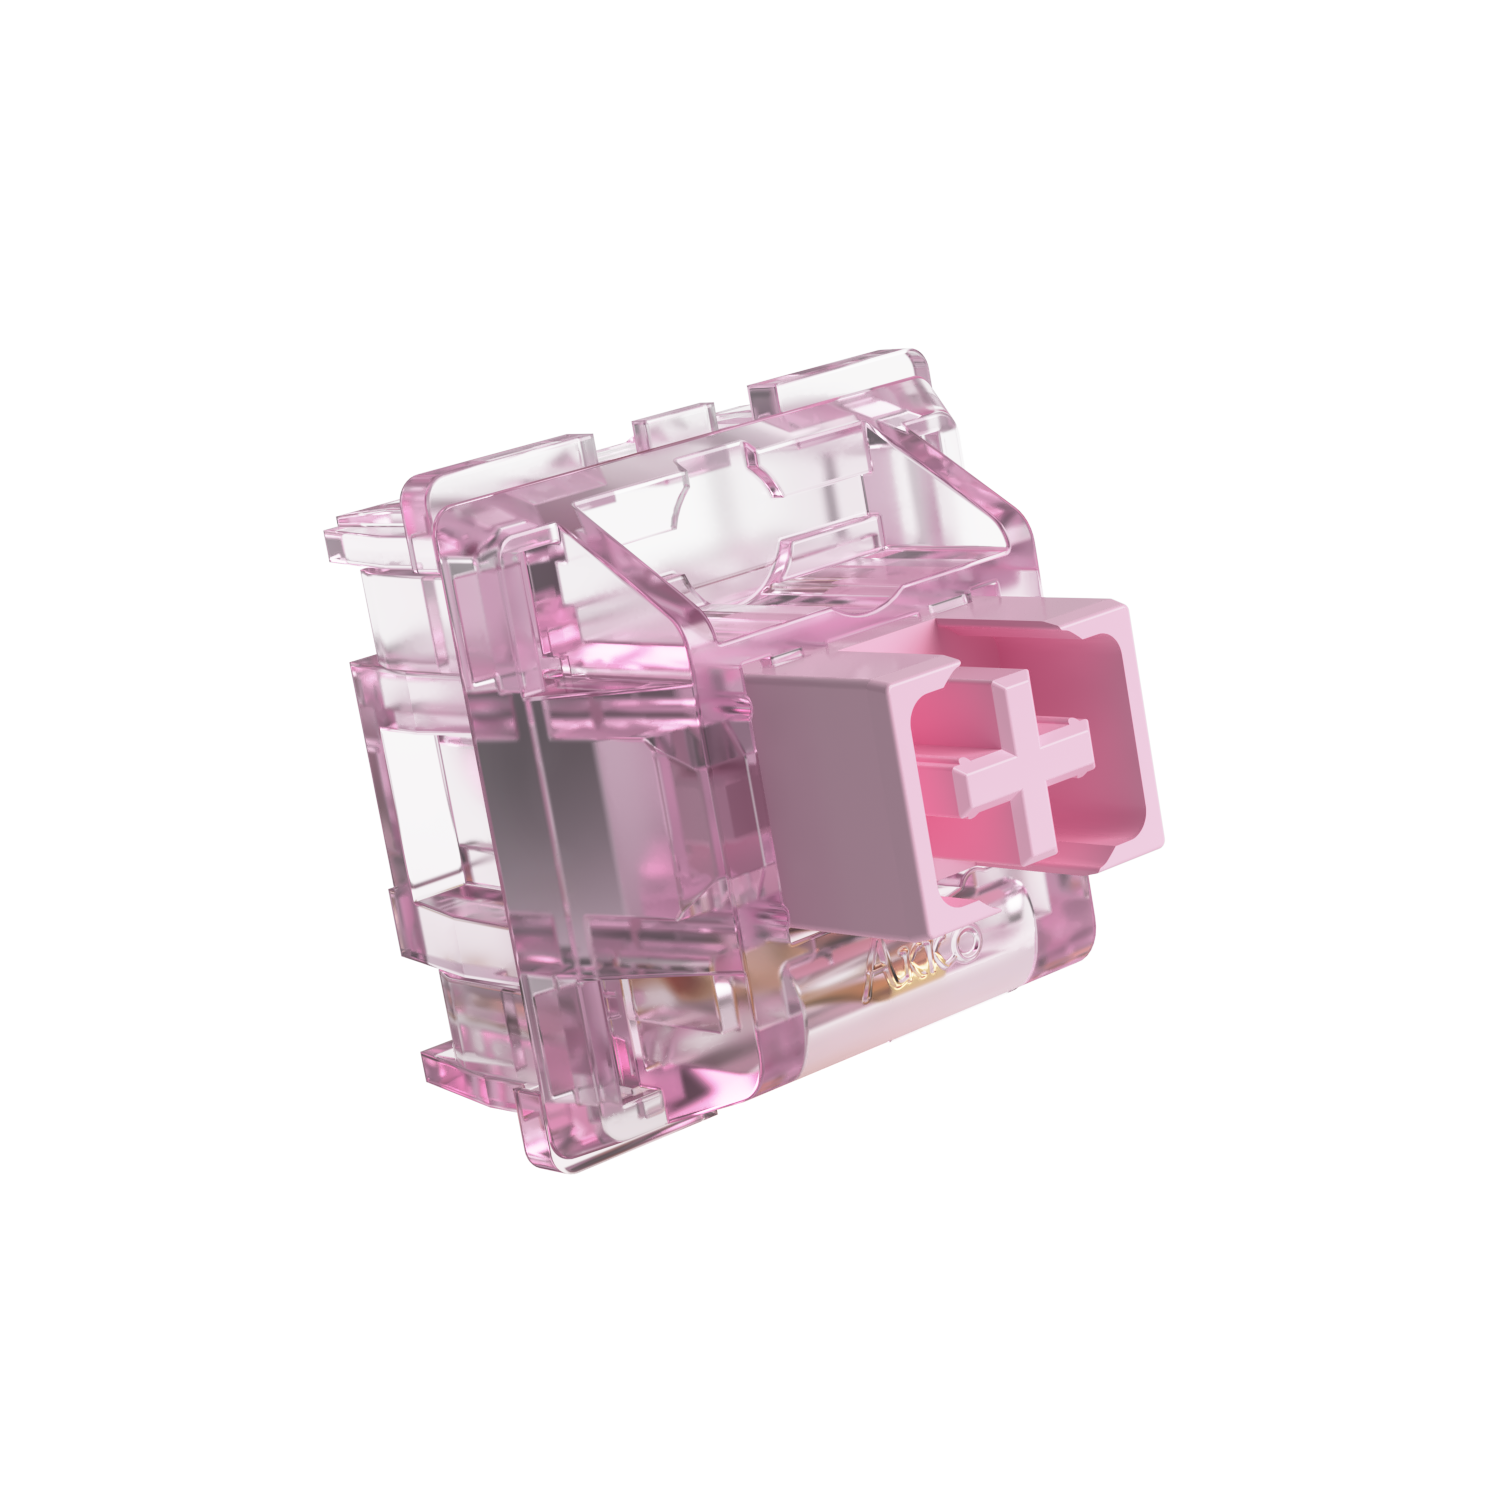 Cs jelly. CS Jelly Pink свитчи. Akko Jelly Pink Switches. Свитчи для клавиатуры Akko Jelly Black. Jelly Pink Switches характеристики.